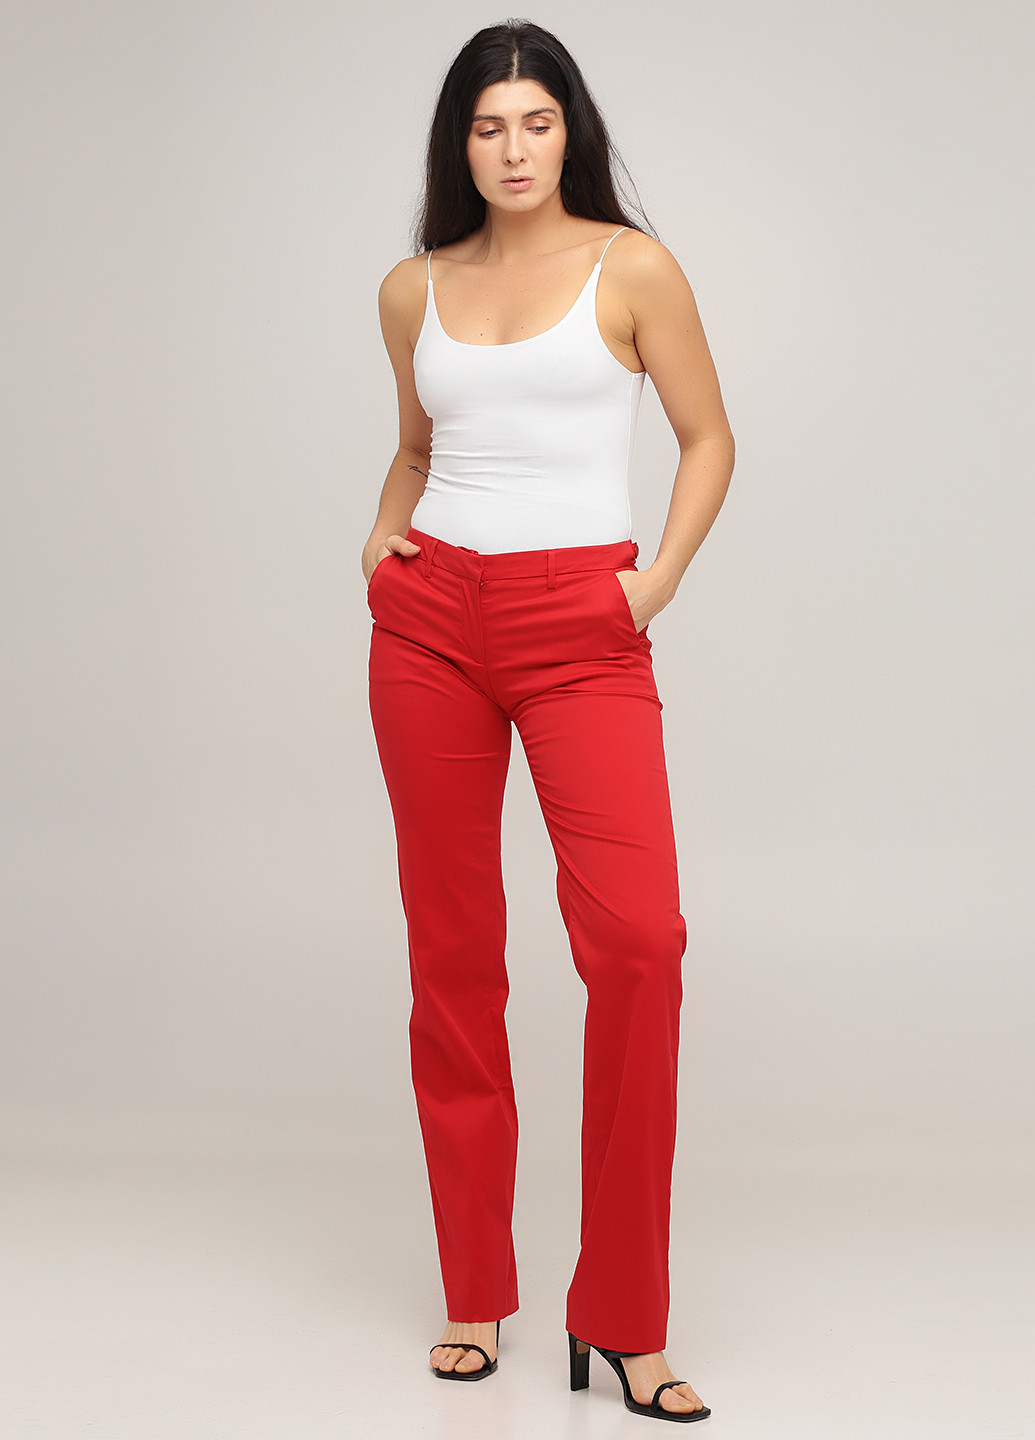 Красные кэжуал демисезонные прямые брюки Armani Jeans